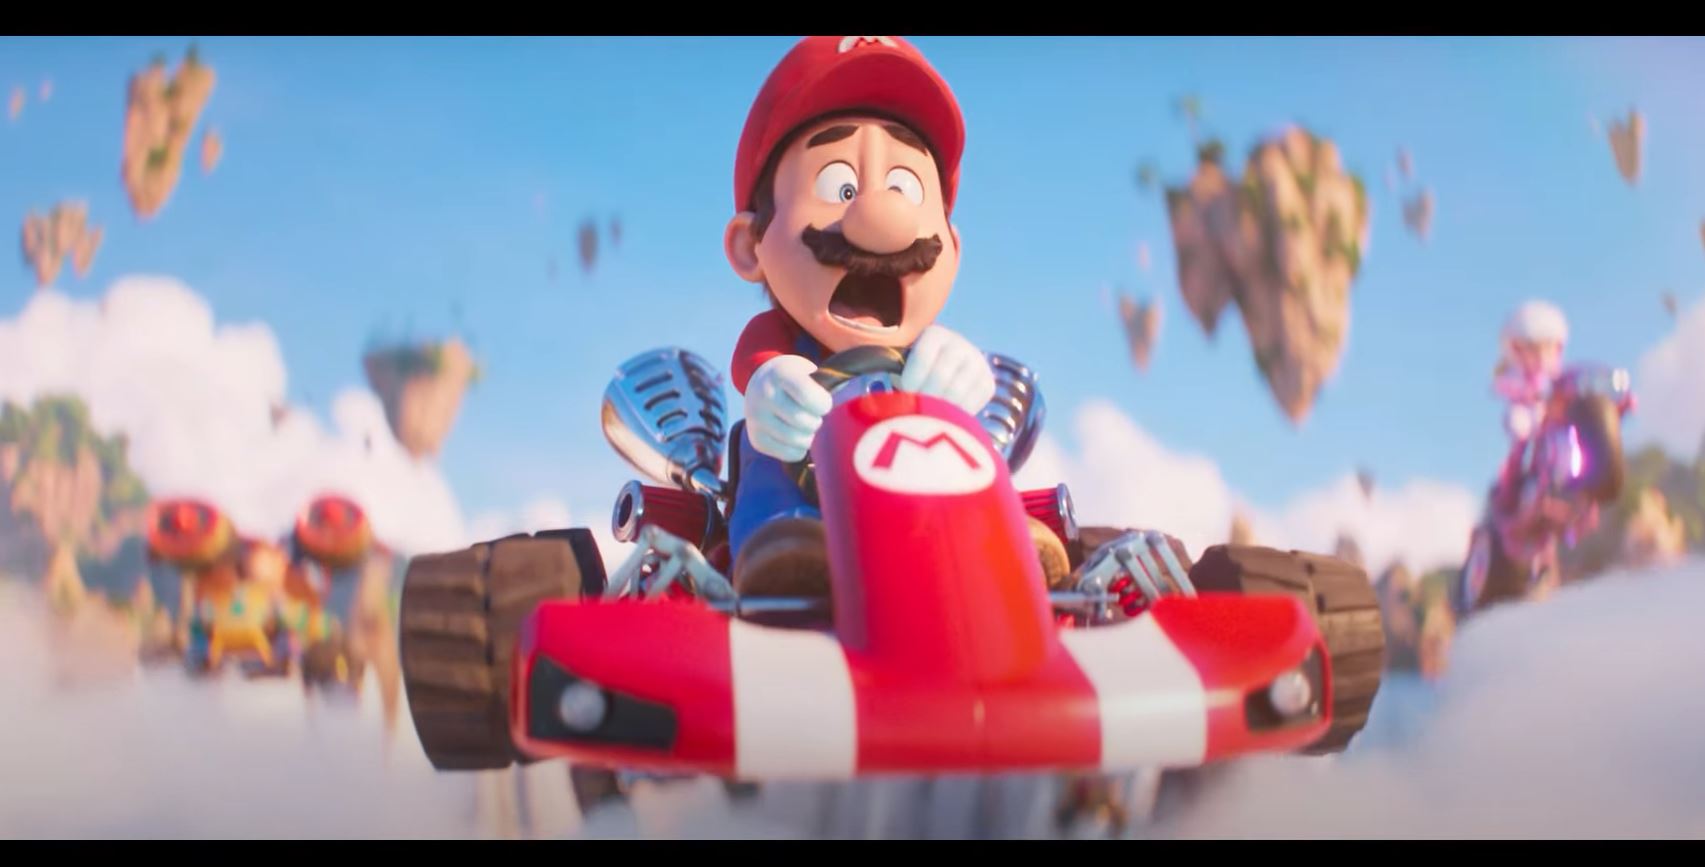 Super Mario Bros Filme 2023 Trailer Oficial Dublado 